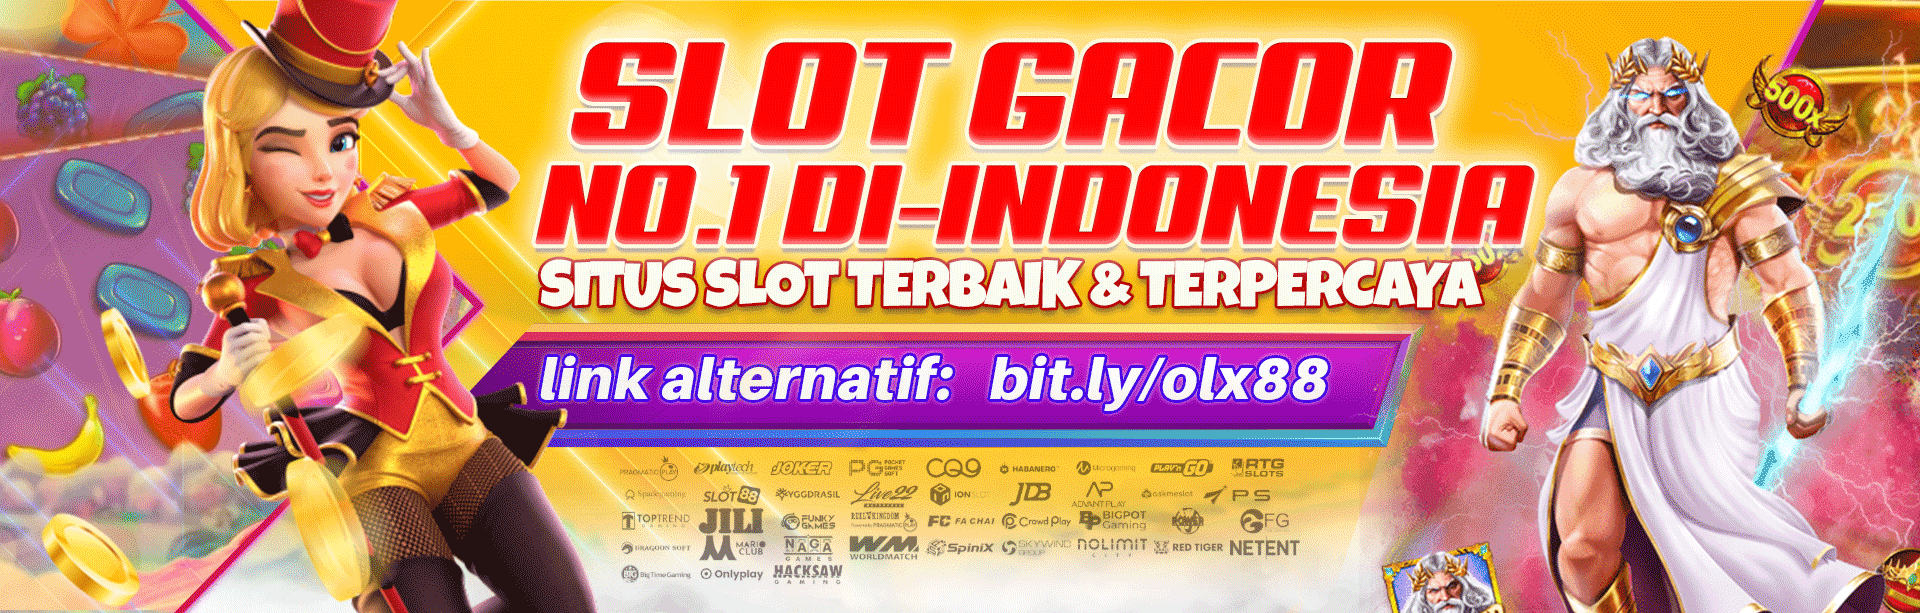 SLOT GACOR NO 1 INDONESIA